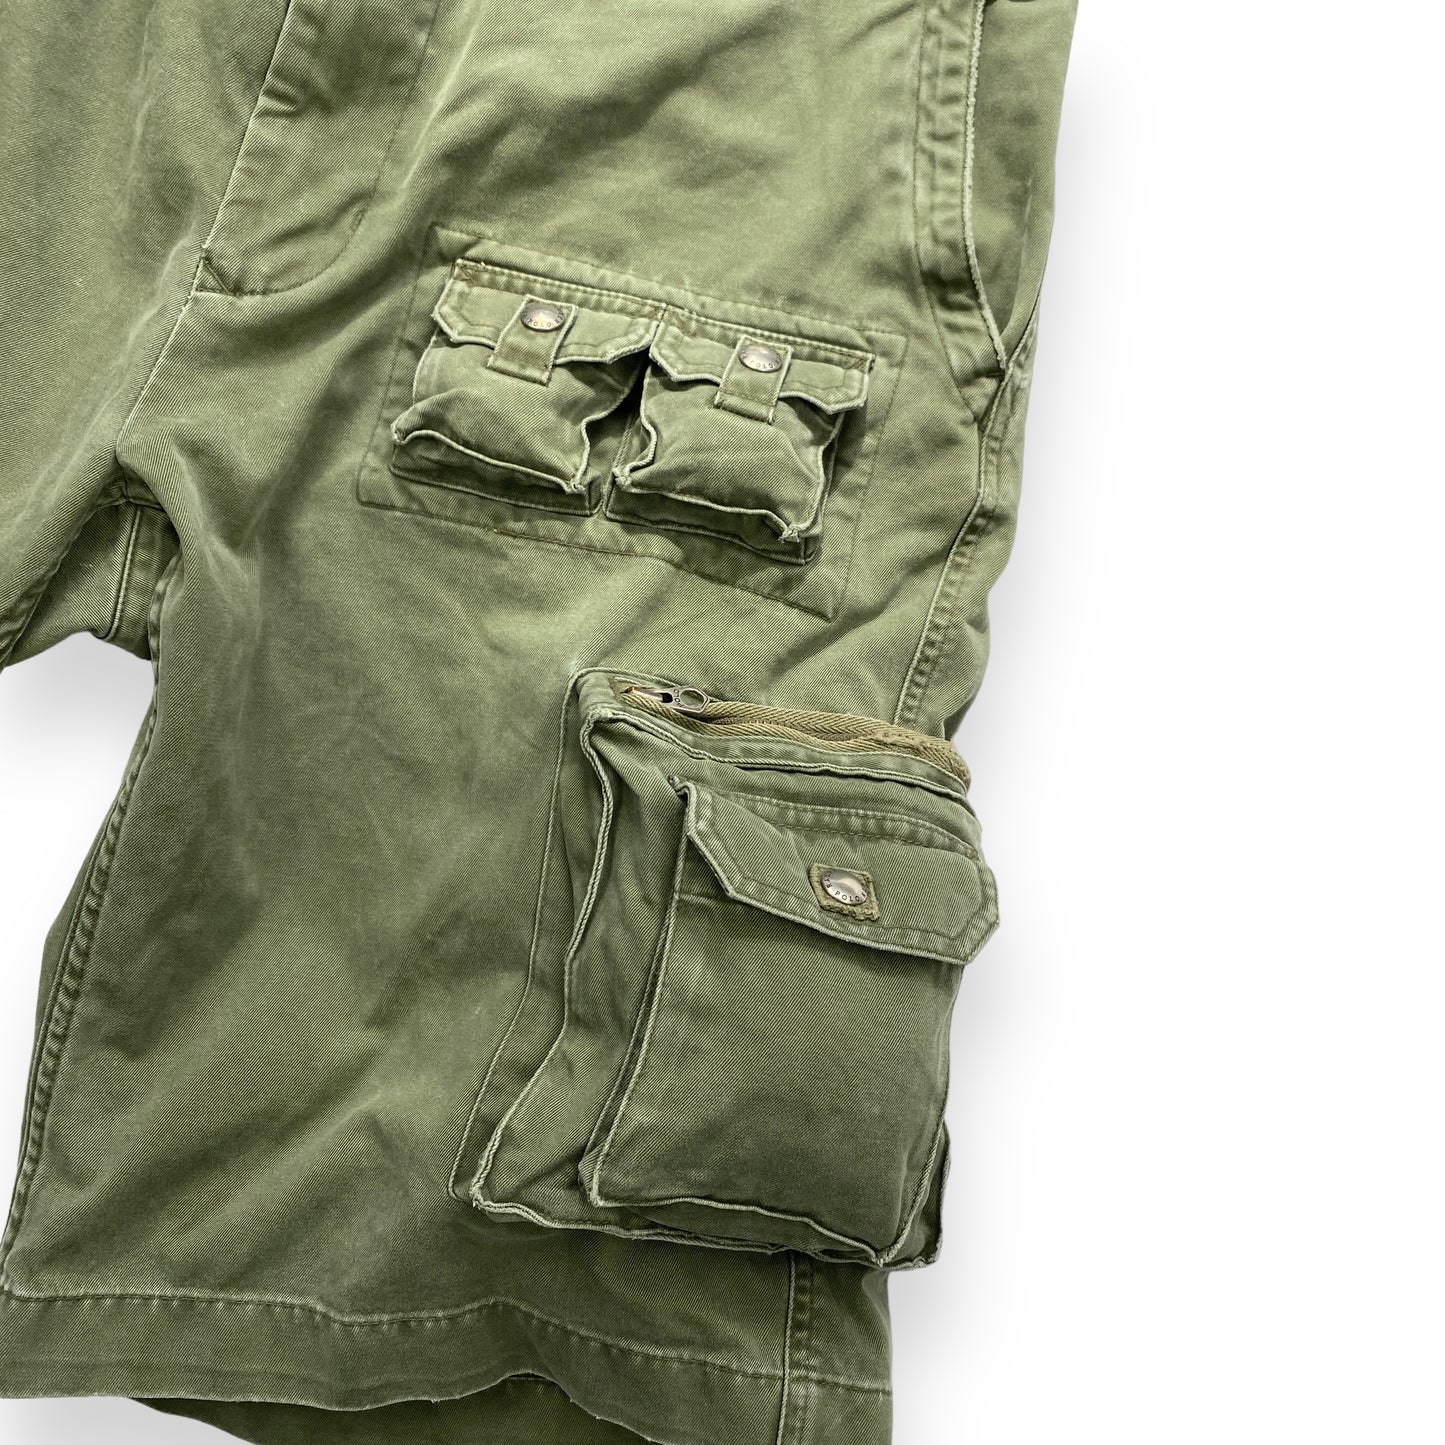 Polo Ralph Lauren Cargo Shorts